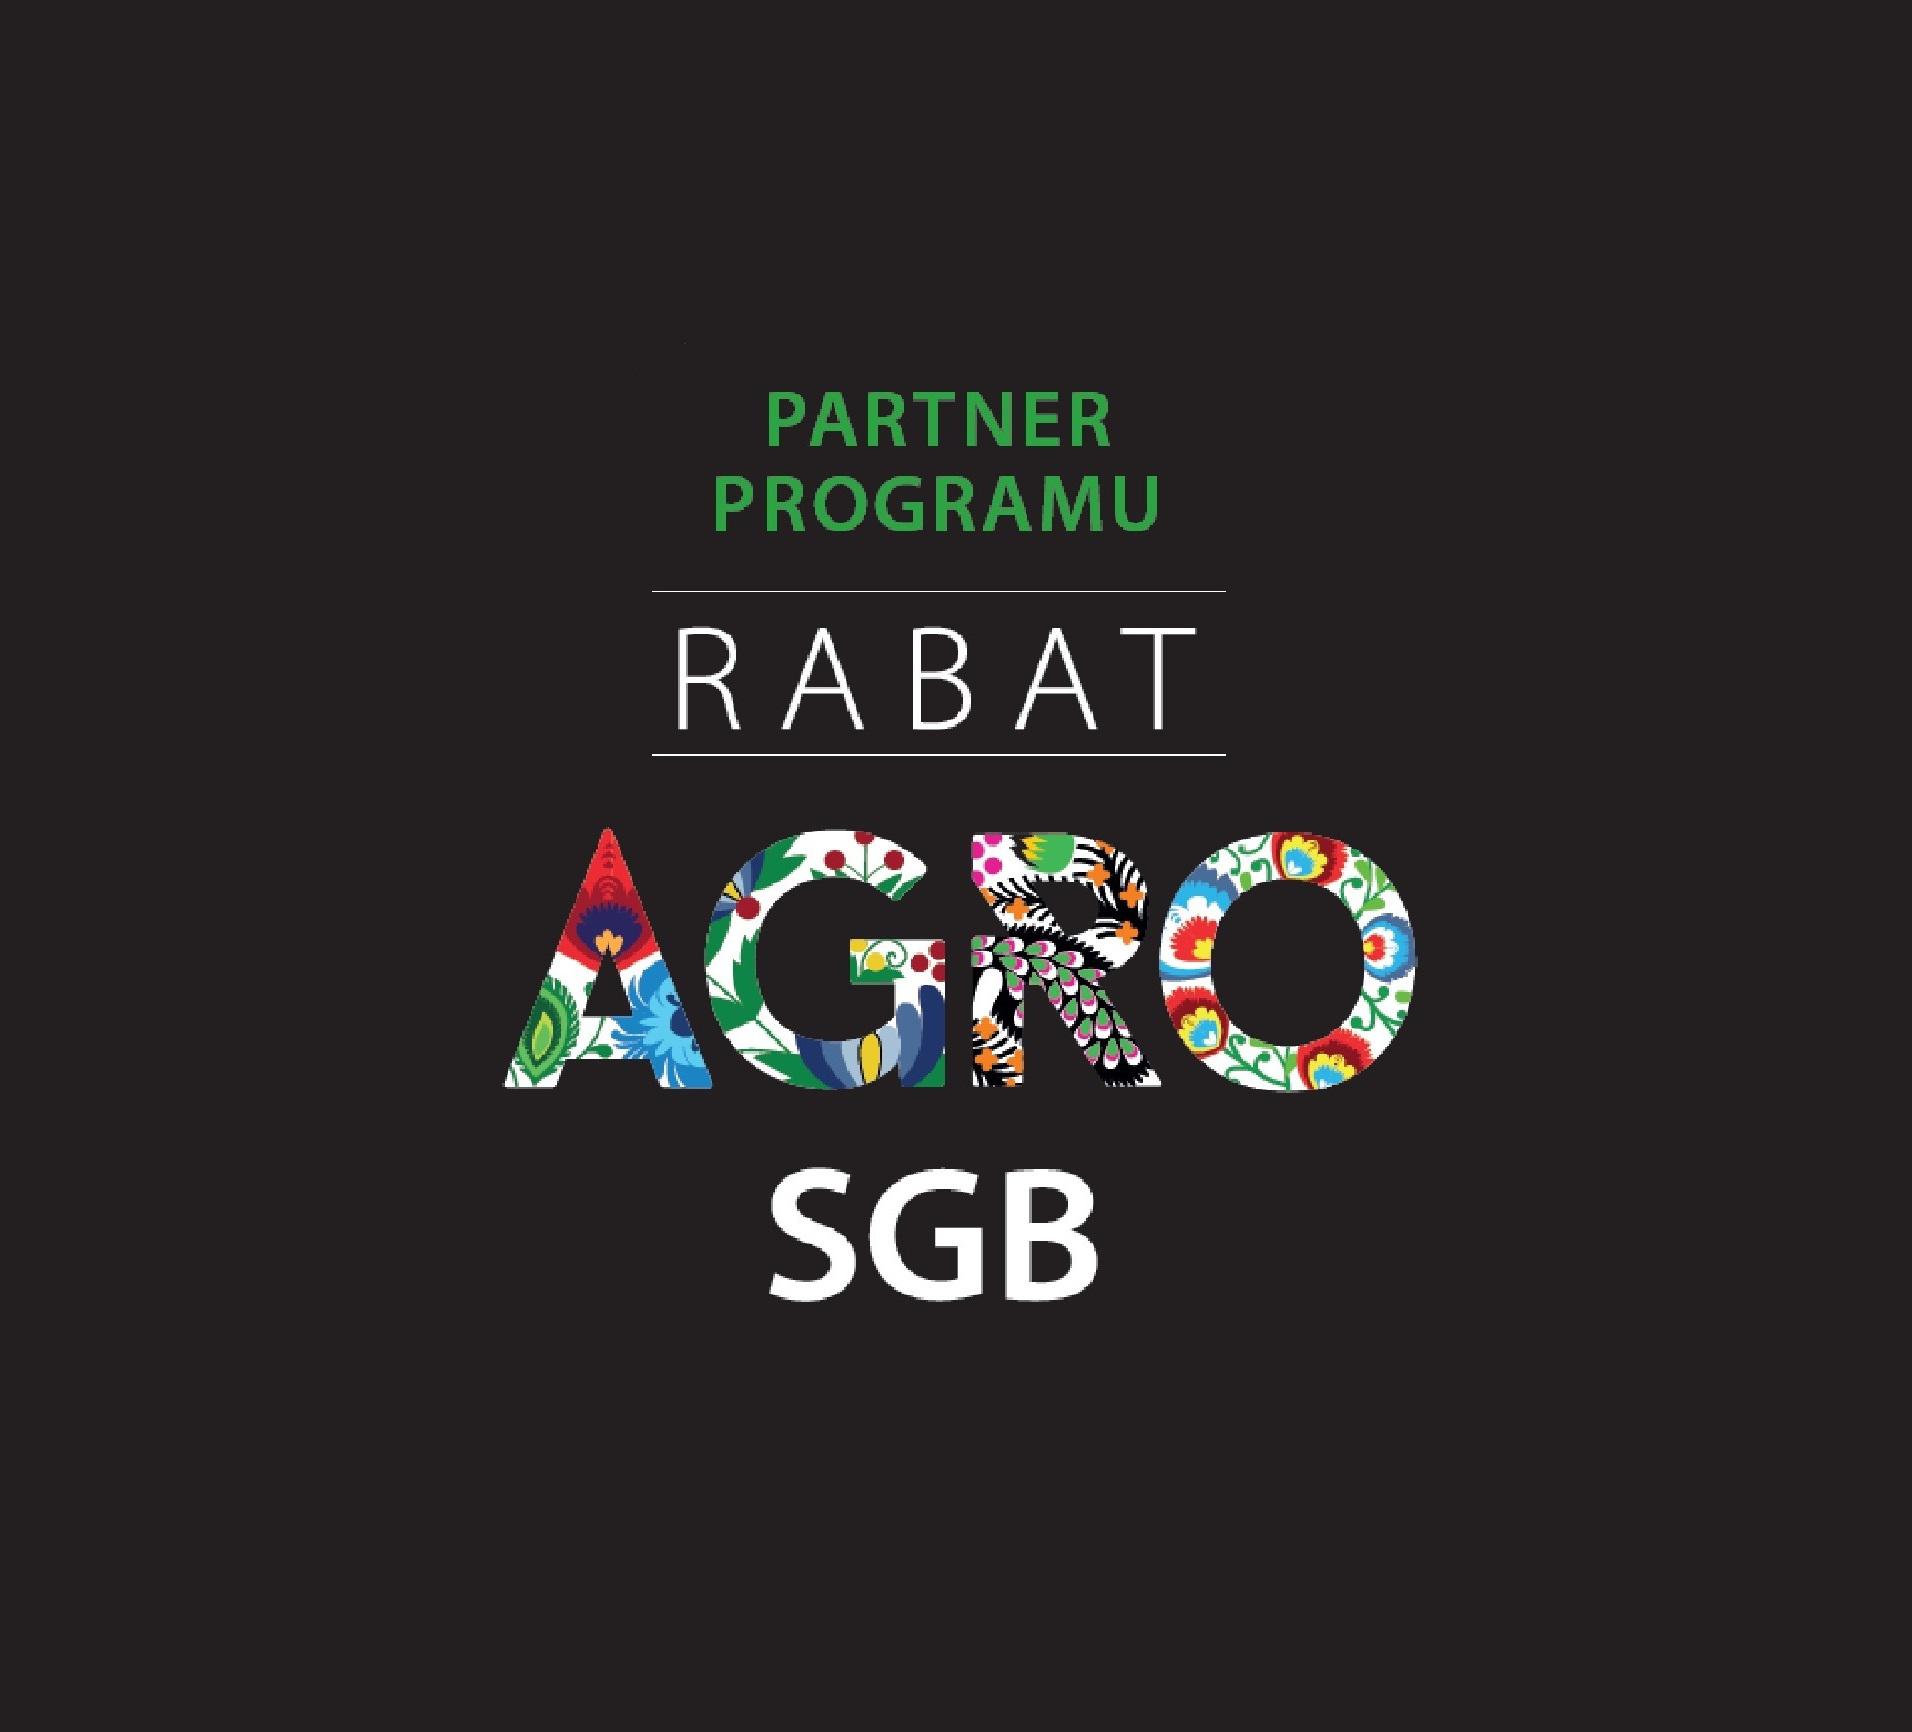 Rabat AGRO SGB